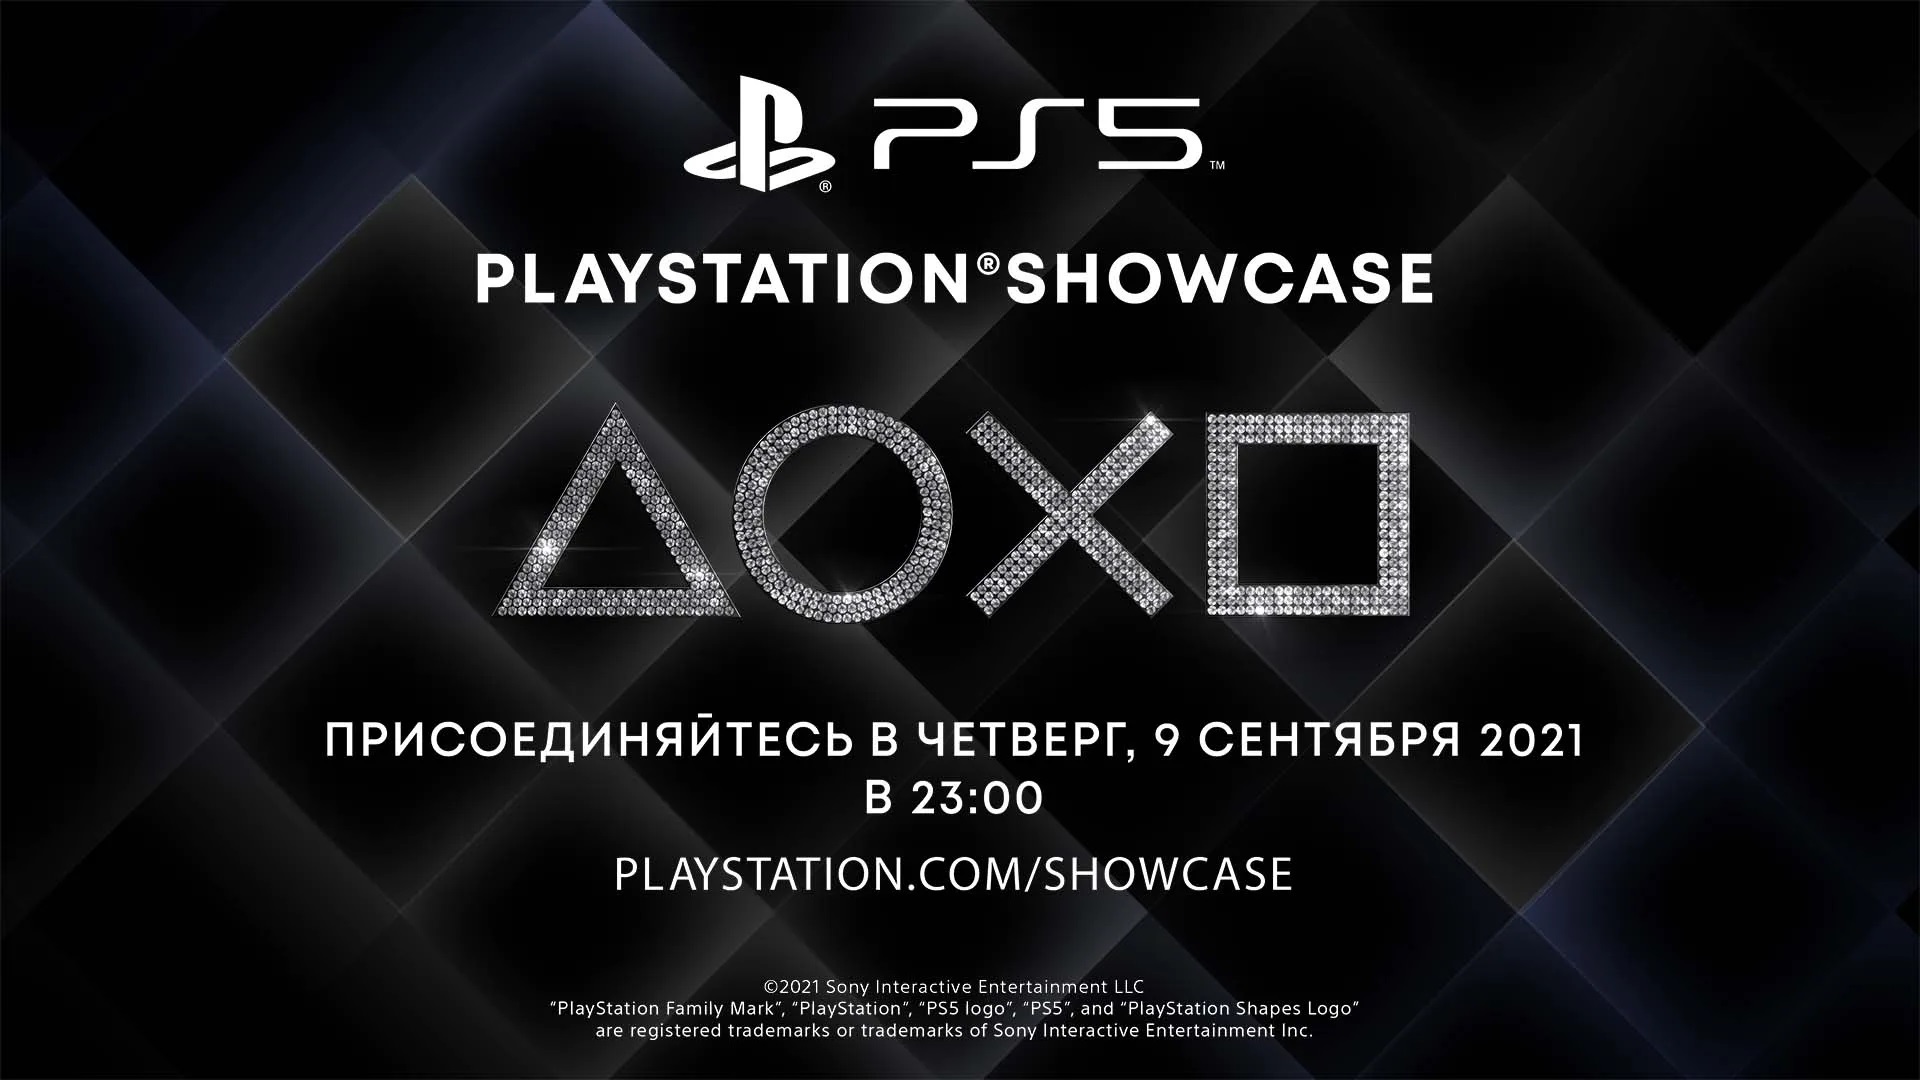 Ein Blick in die Zukunft der PS5: Sony veranstaltet ein PlayStation 5-Event